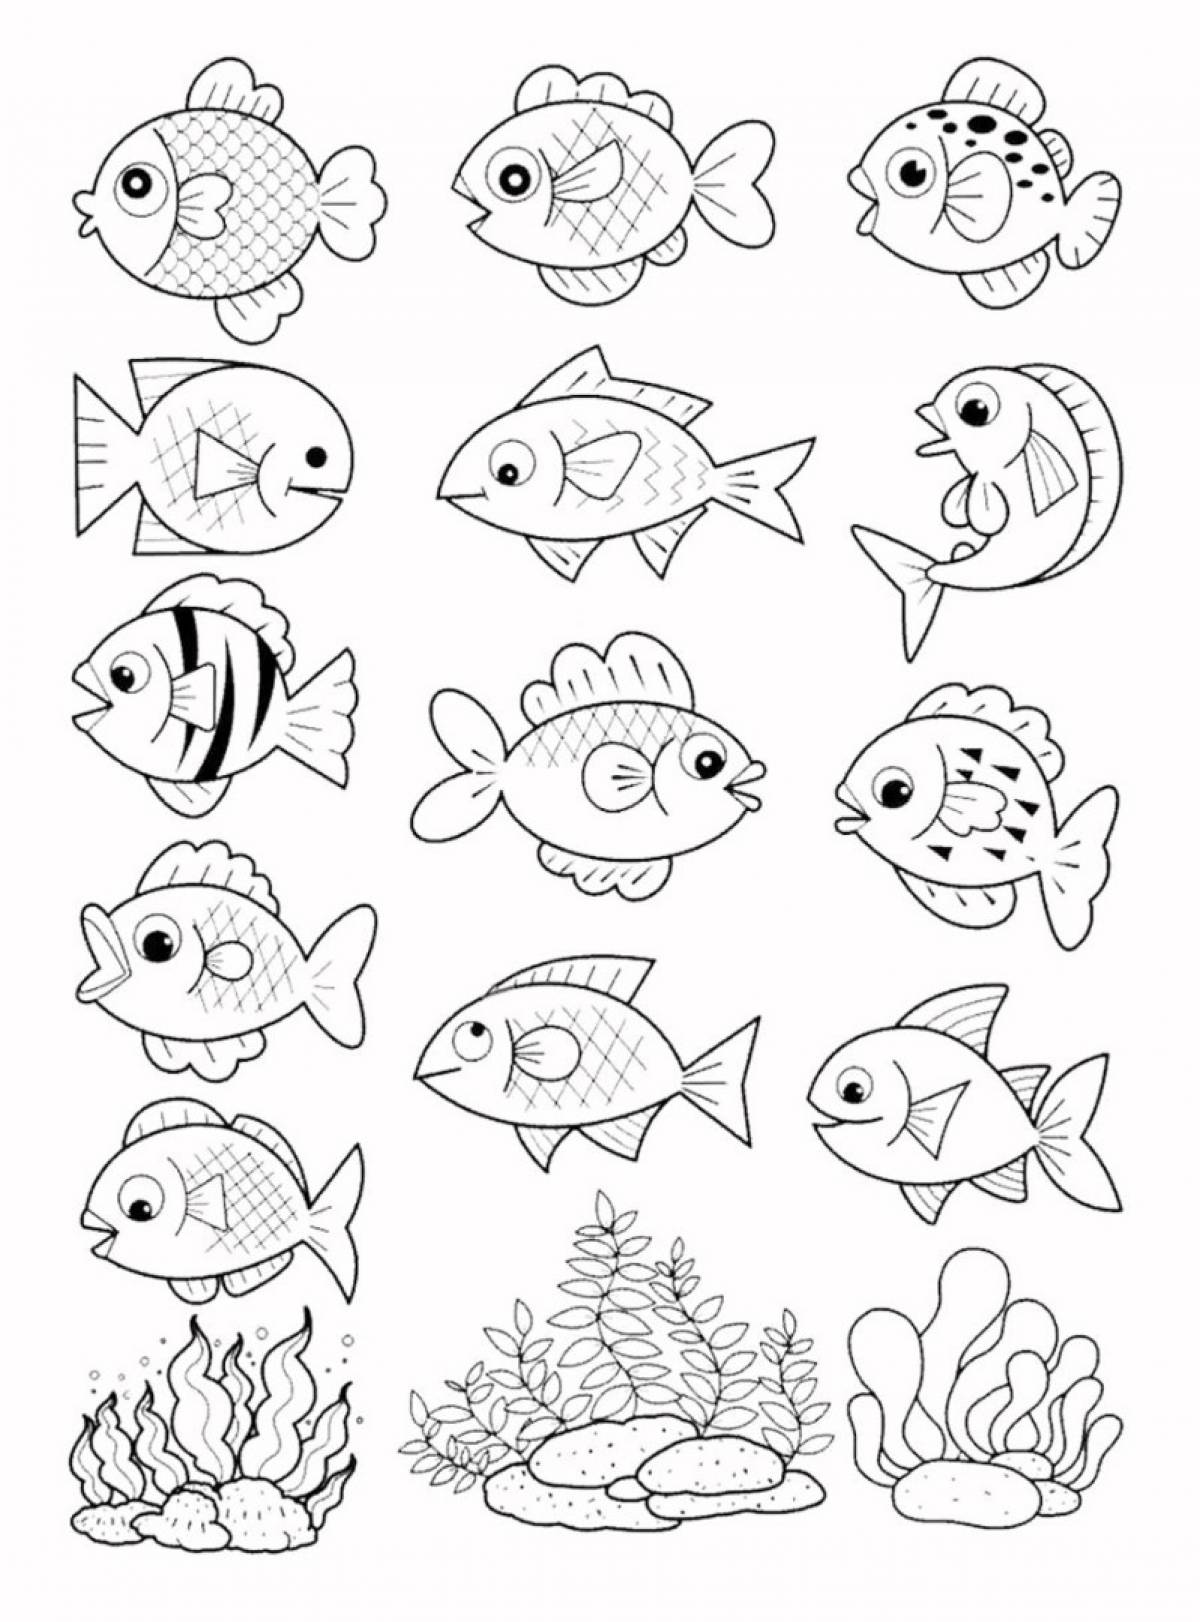 Раскраска рыбки для детей 5 6 лет. Раскраска рыбка. Рыба раскраска для детей. Рыбка раскраска для детей. Аквариумные рыбки раскраска.